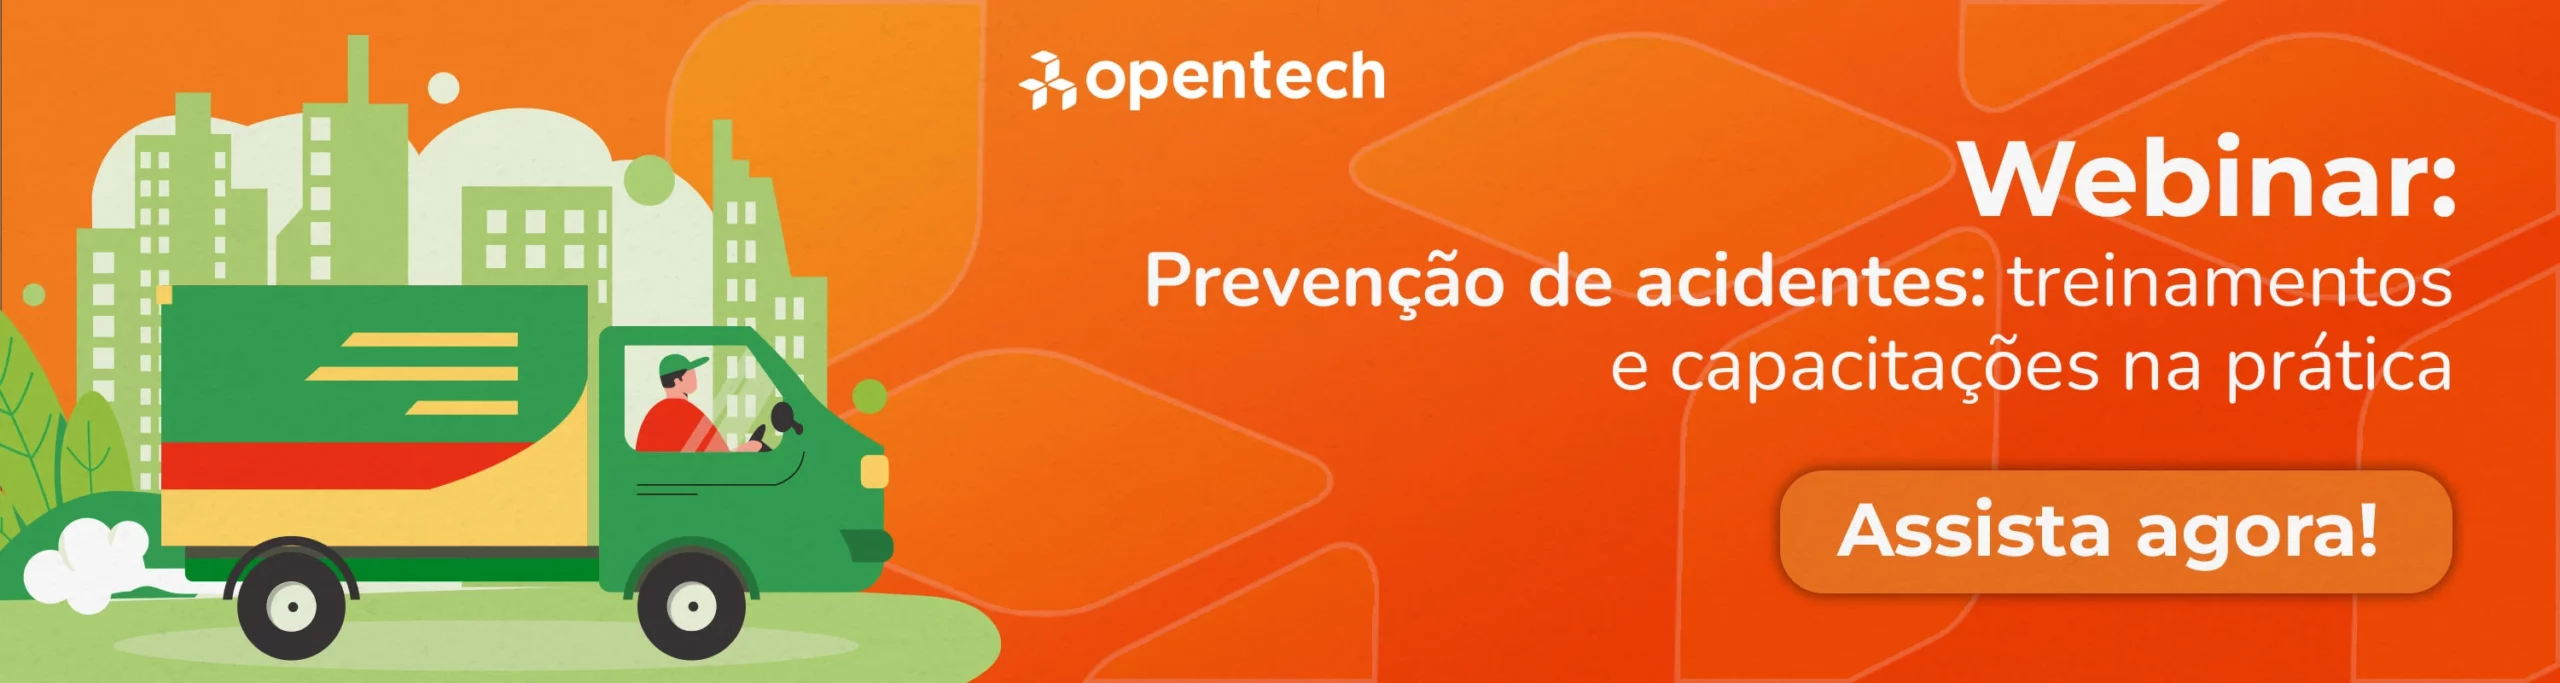 Webinar: Prevenção de Acidentes: treinamentos e capacitação na prática - Opentech